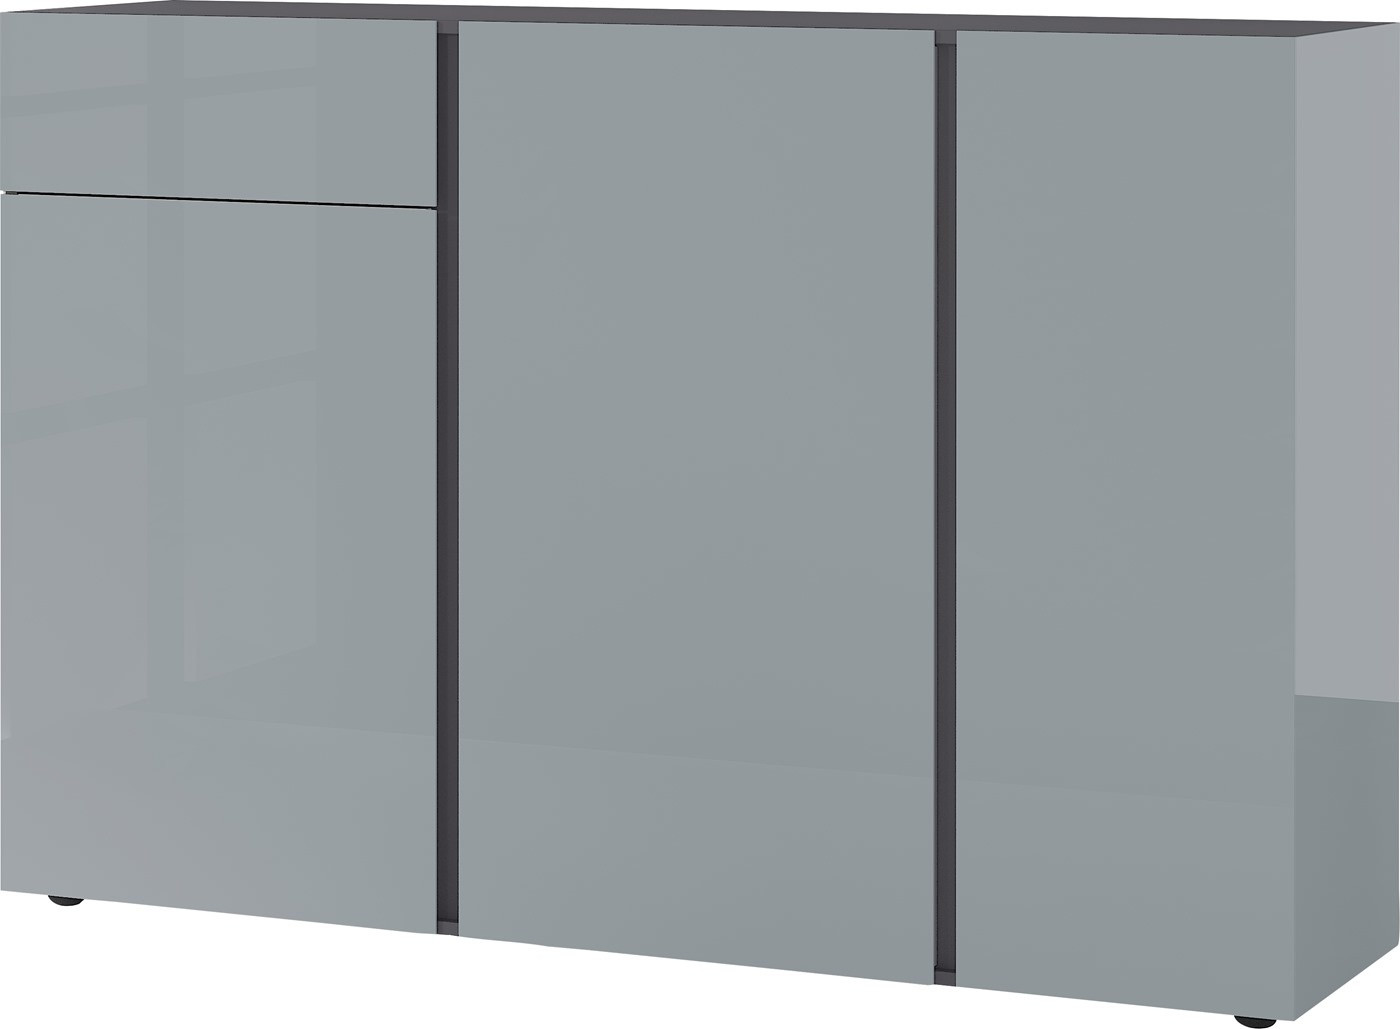 Dressoir Mesa 152 cm breed in grafiet met zilvergrijs